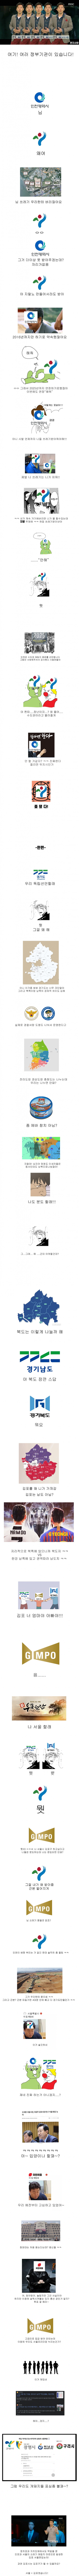 서울 김포 편입 논의 요약 - 3